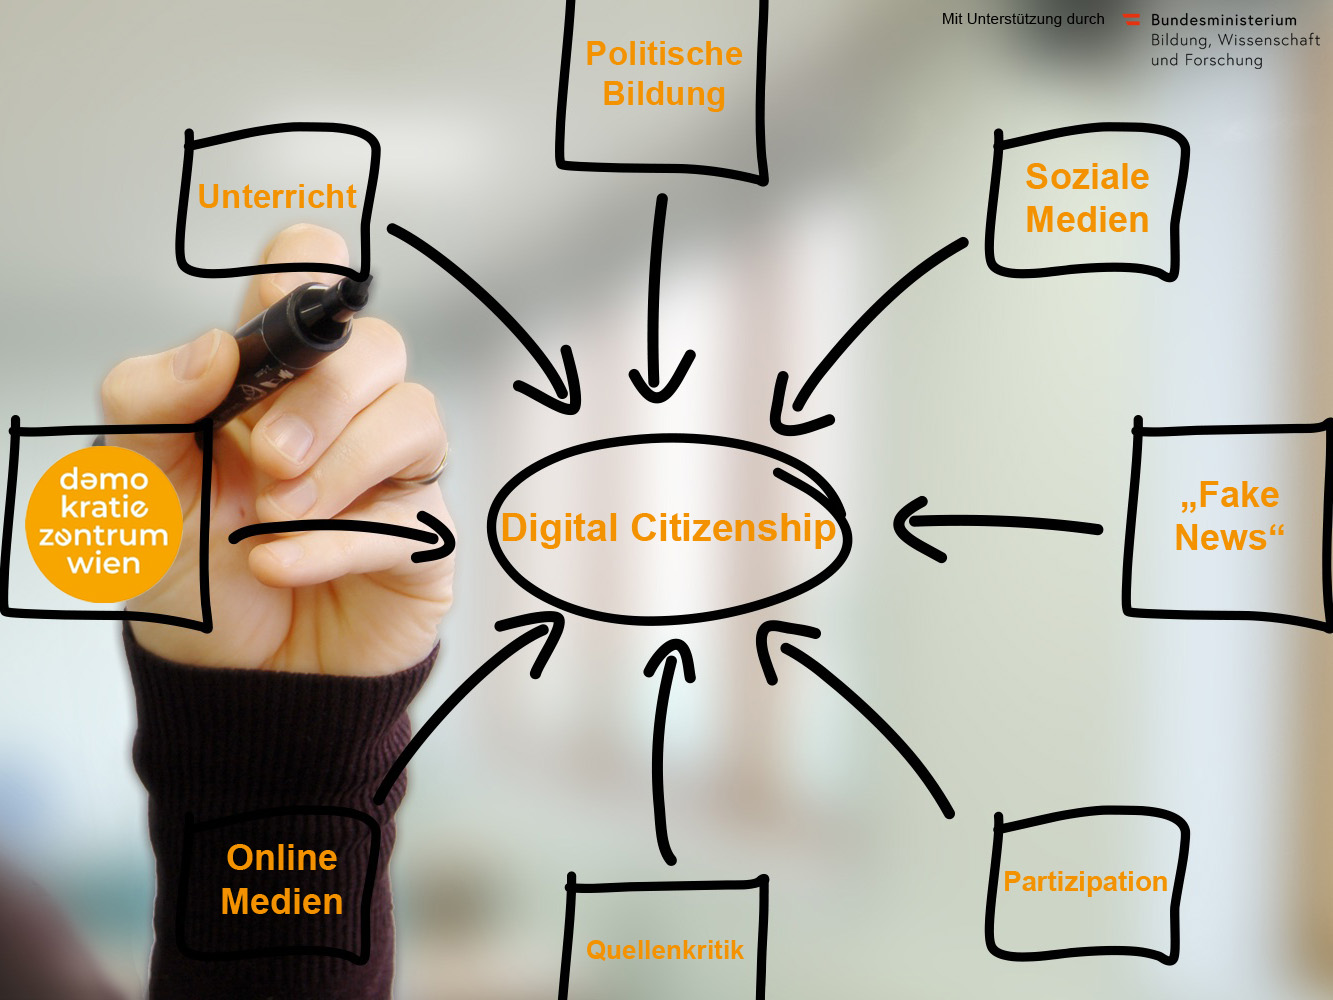 Digital Citizenship - demokratiezentrum wien - Logo